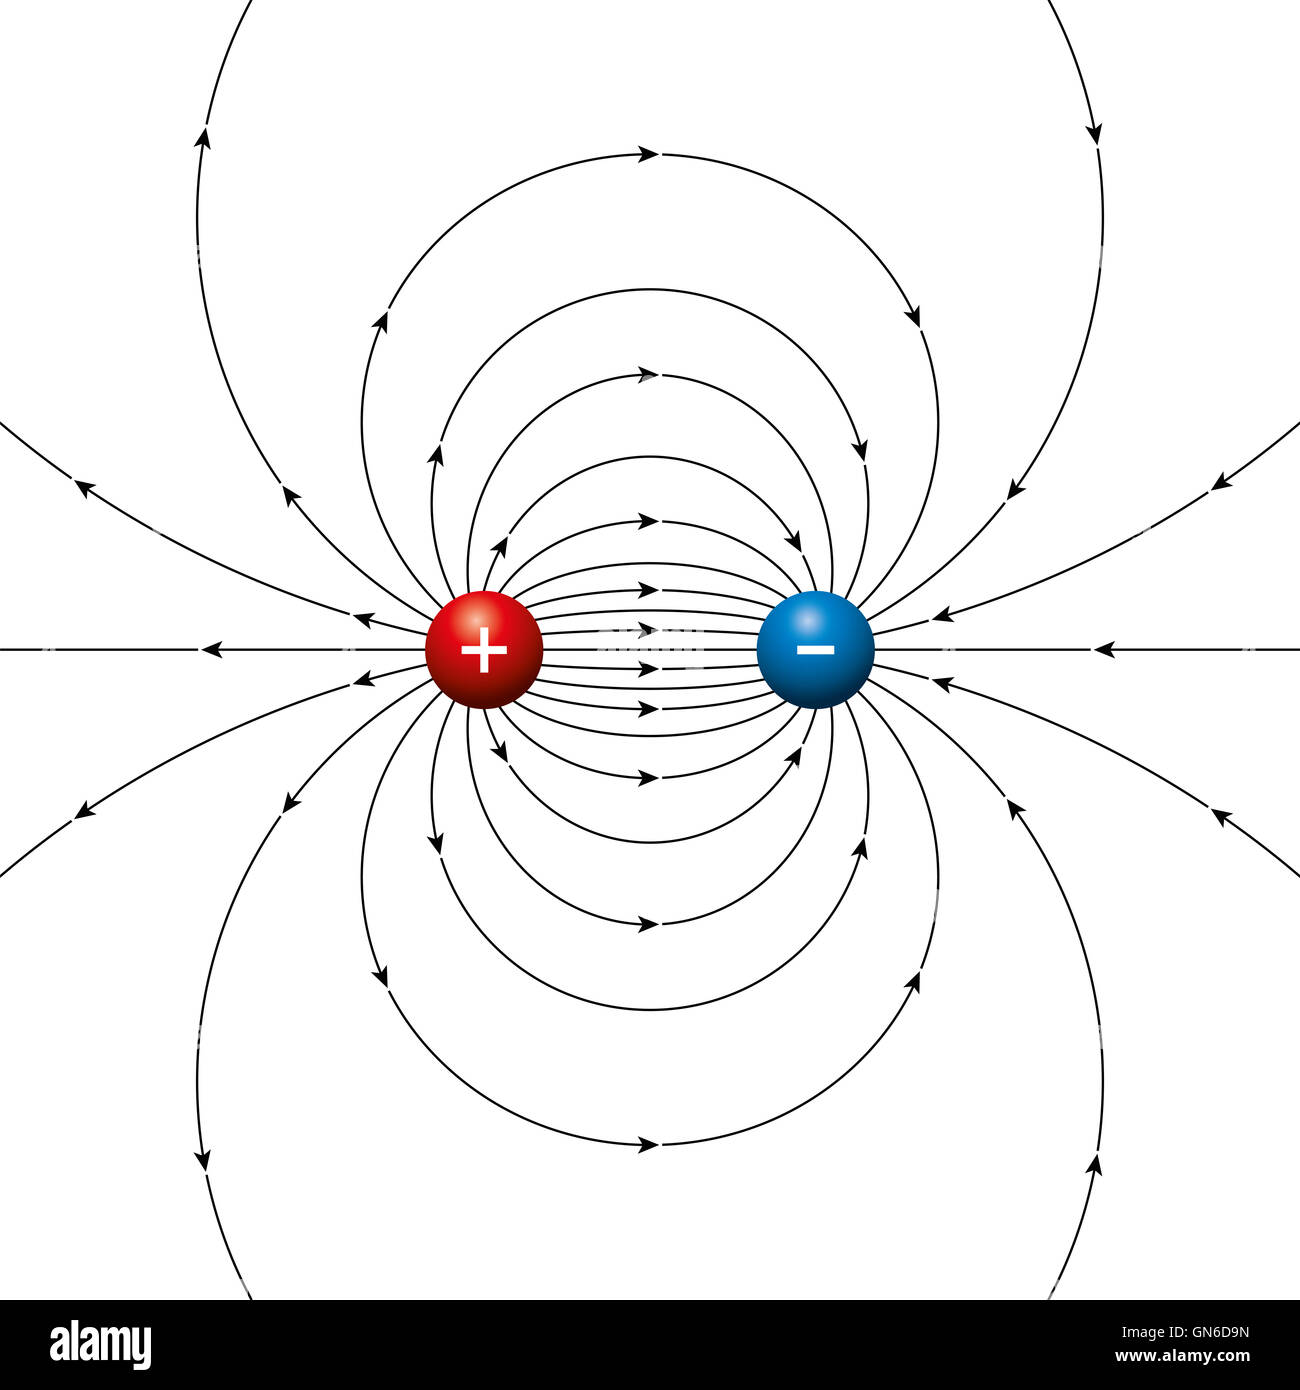 Elektrische Feldlinien von zwei entgegengesetzten Ladungen getrennt durch einen endlichen Abstand. Physikalischer Dipol, zwei Pole. Stockfoto